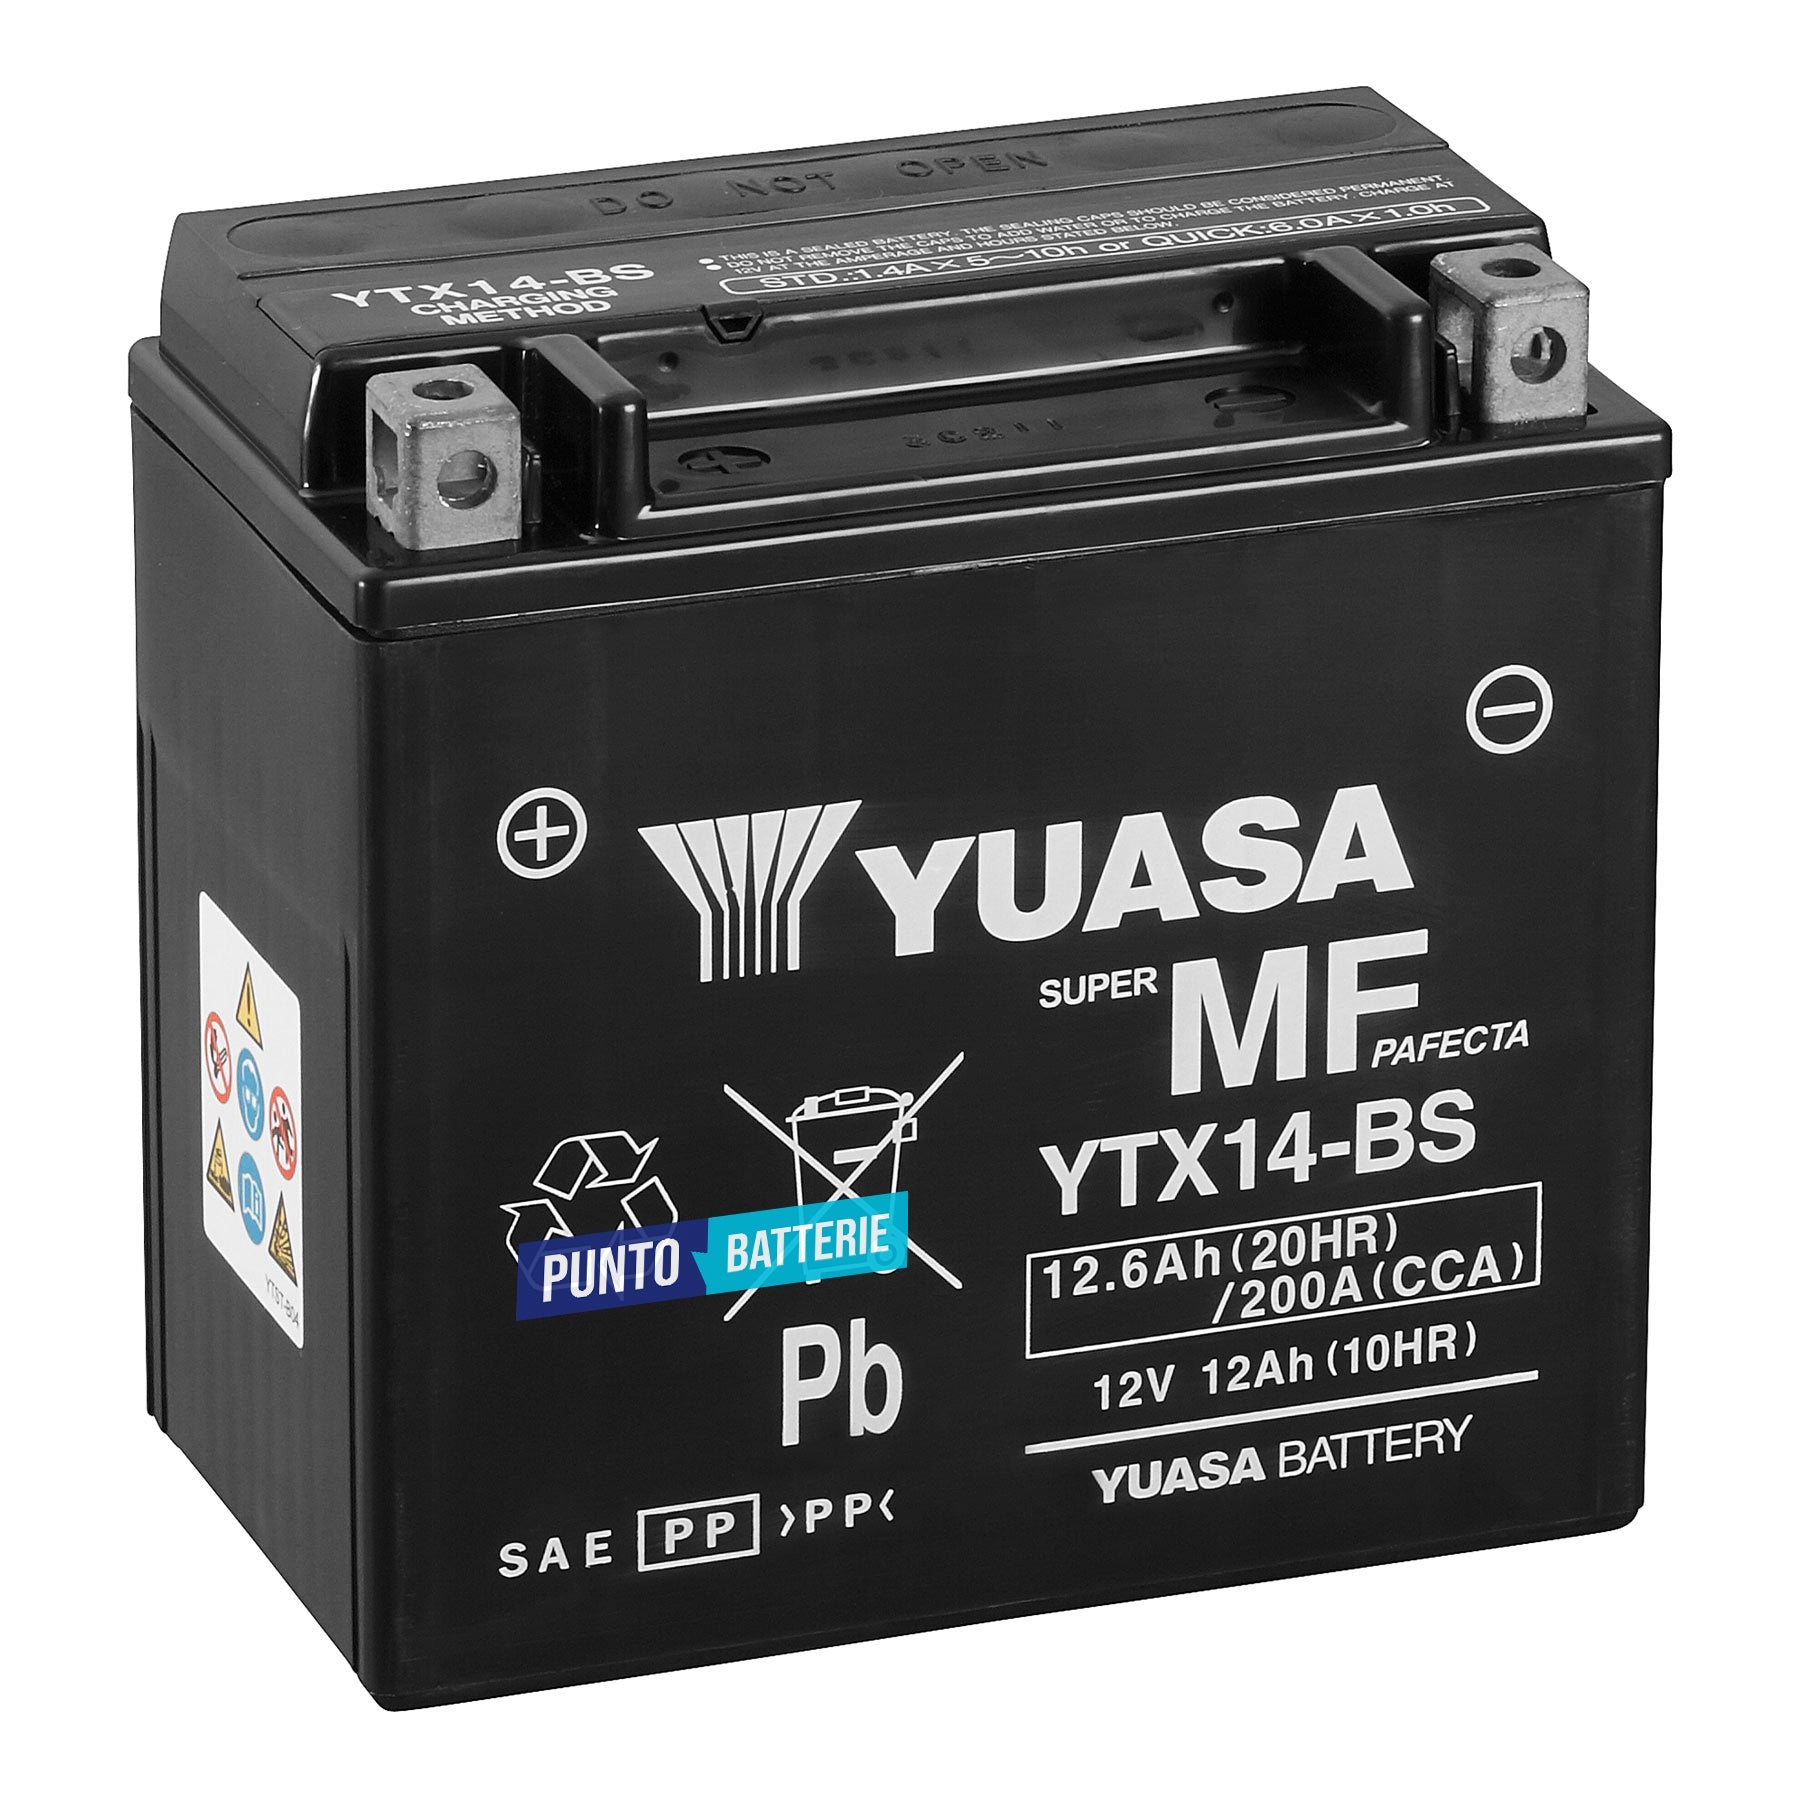 Batteria originale Yuasa YTX YTX14-BS, dimensioni 150 x 87 x 145, polo positivo a sinistra, 12 volt, 12 amperora, 200 ampere. Batteria per moto, scooter e powersport.